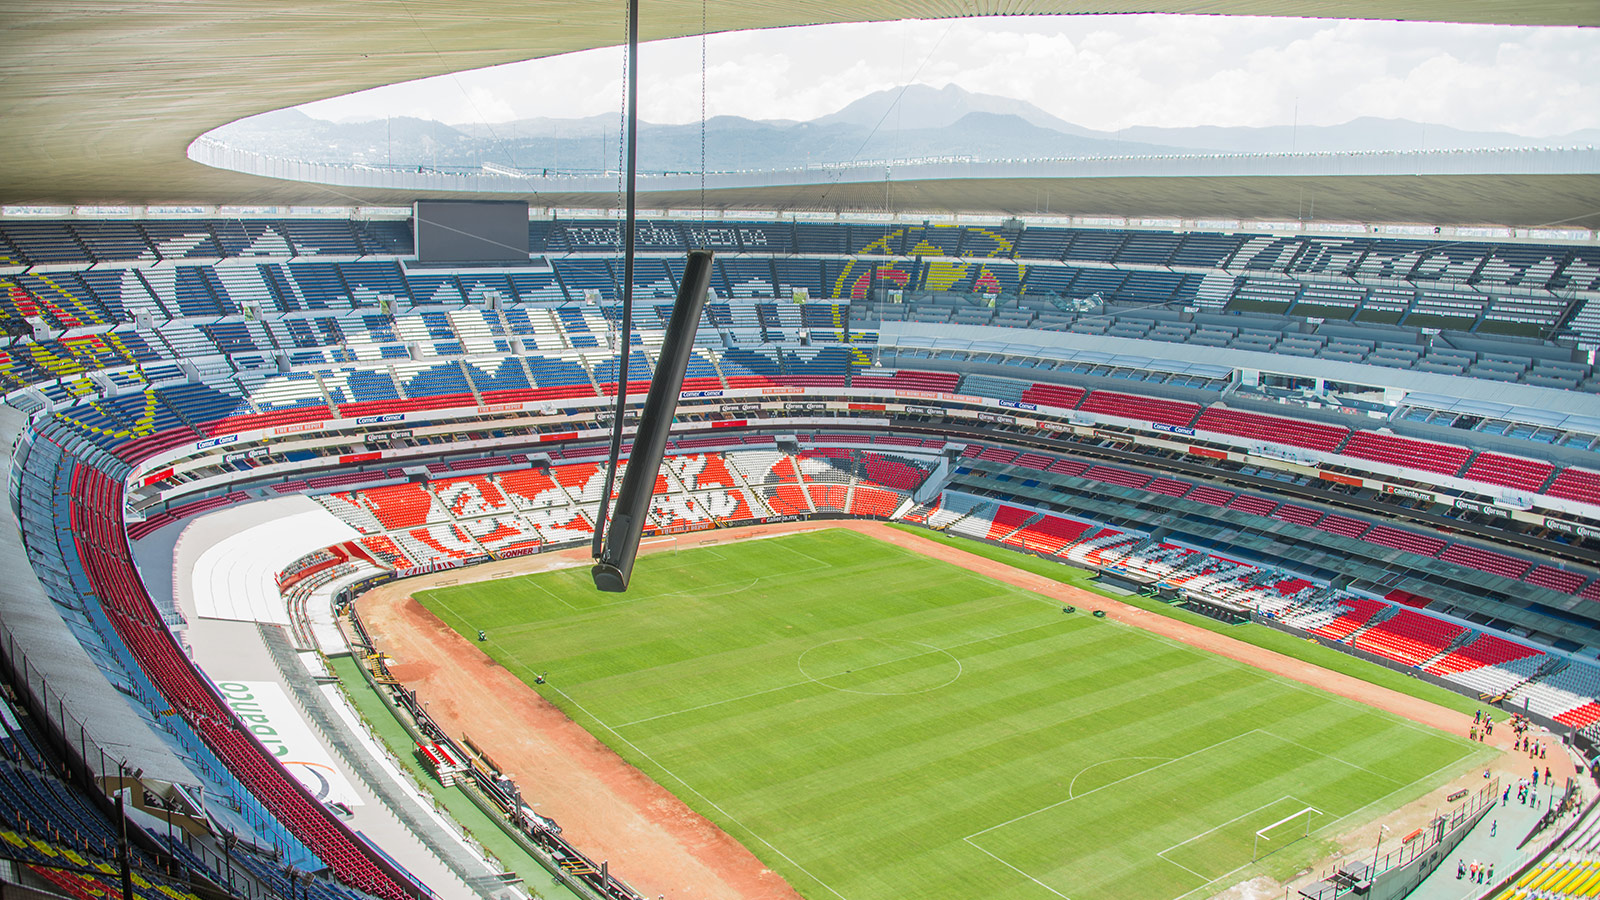 Mexico City's Azteca Stadium